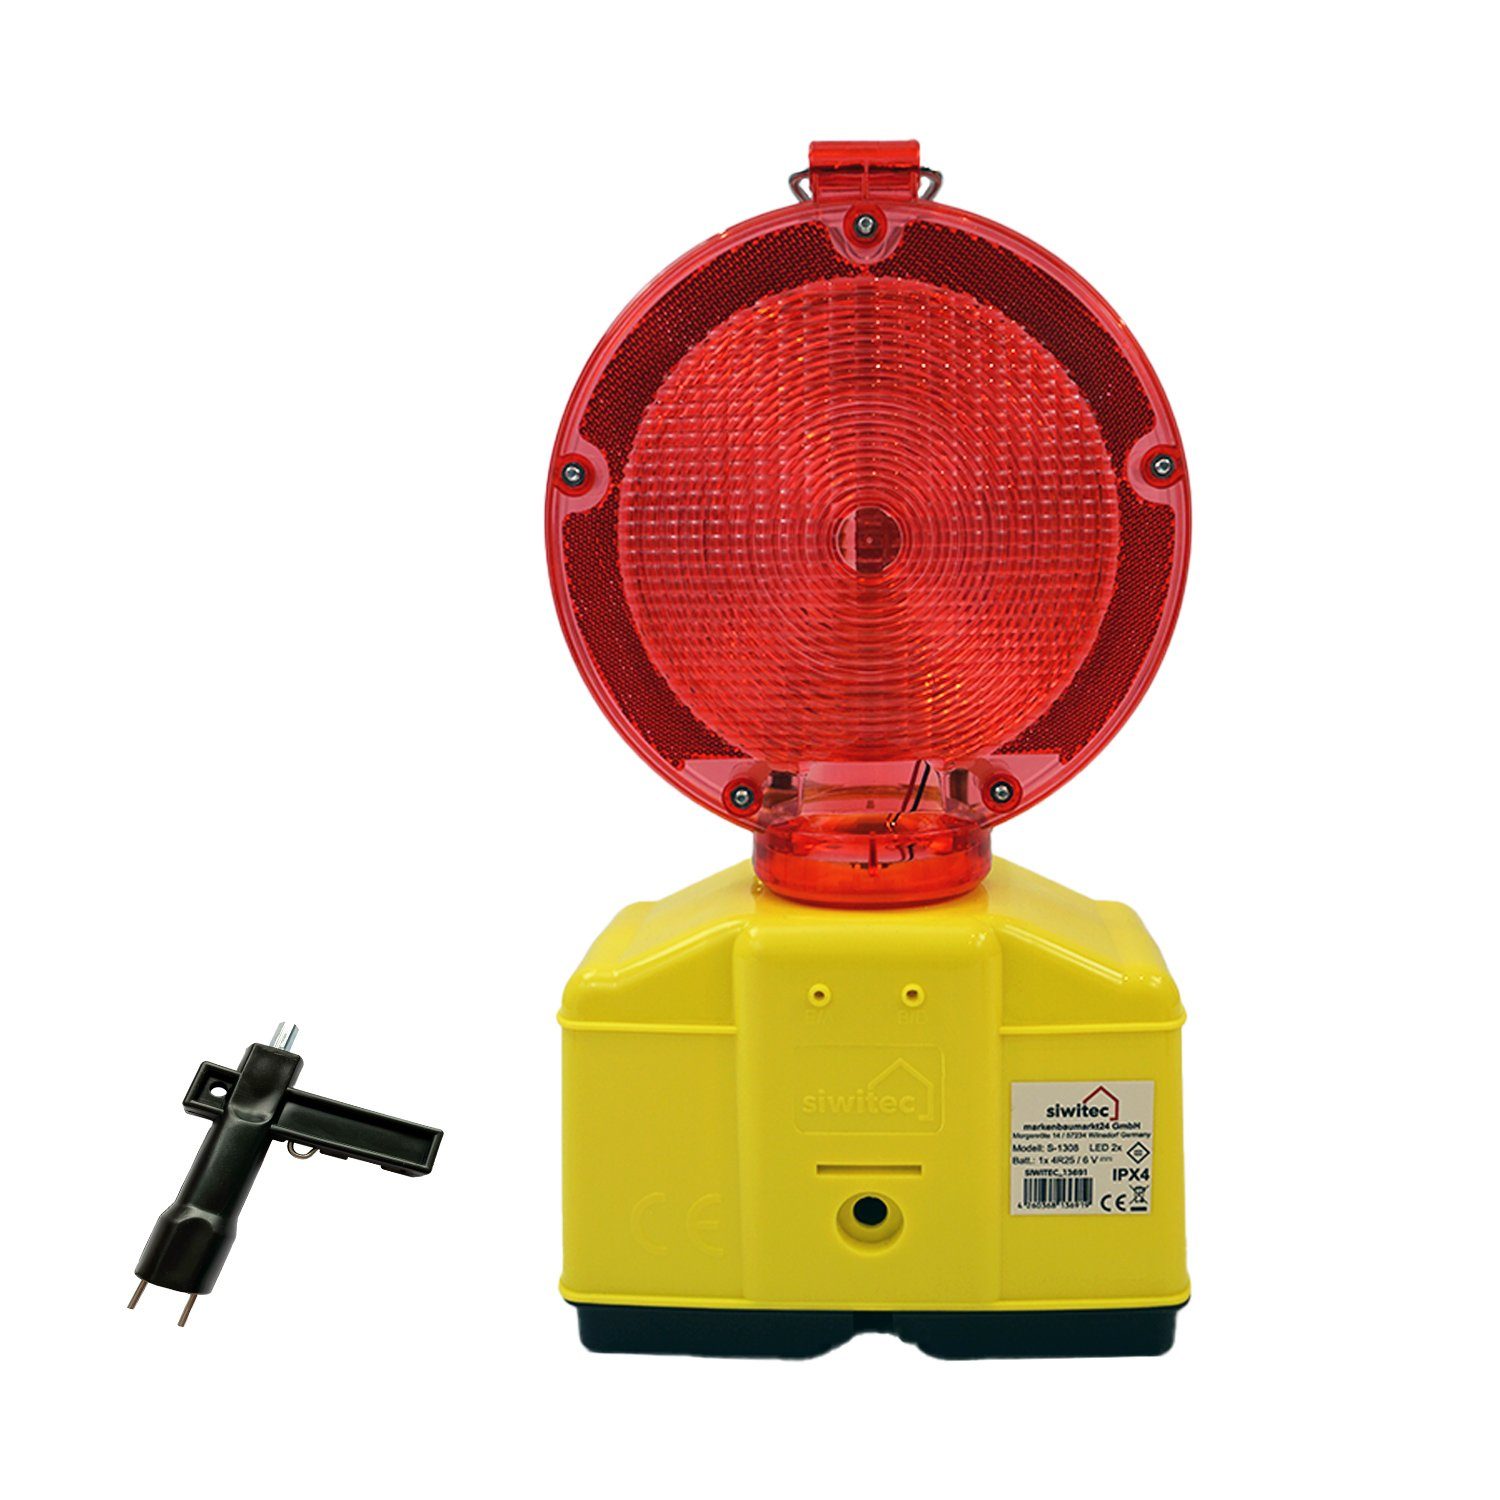 siwitec Baustrahler LED mit Dauerlichtfunktion, Rot/Transparent Blink- Dämmerungsautomatik Dämmerungssensor und und Warnleuchte Lampenschlüssel